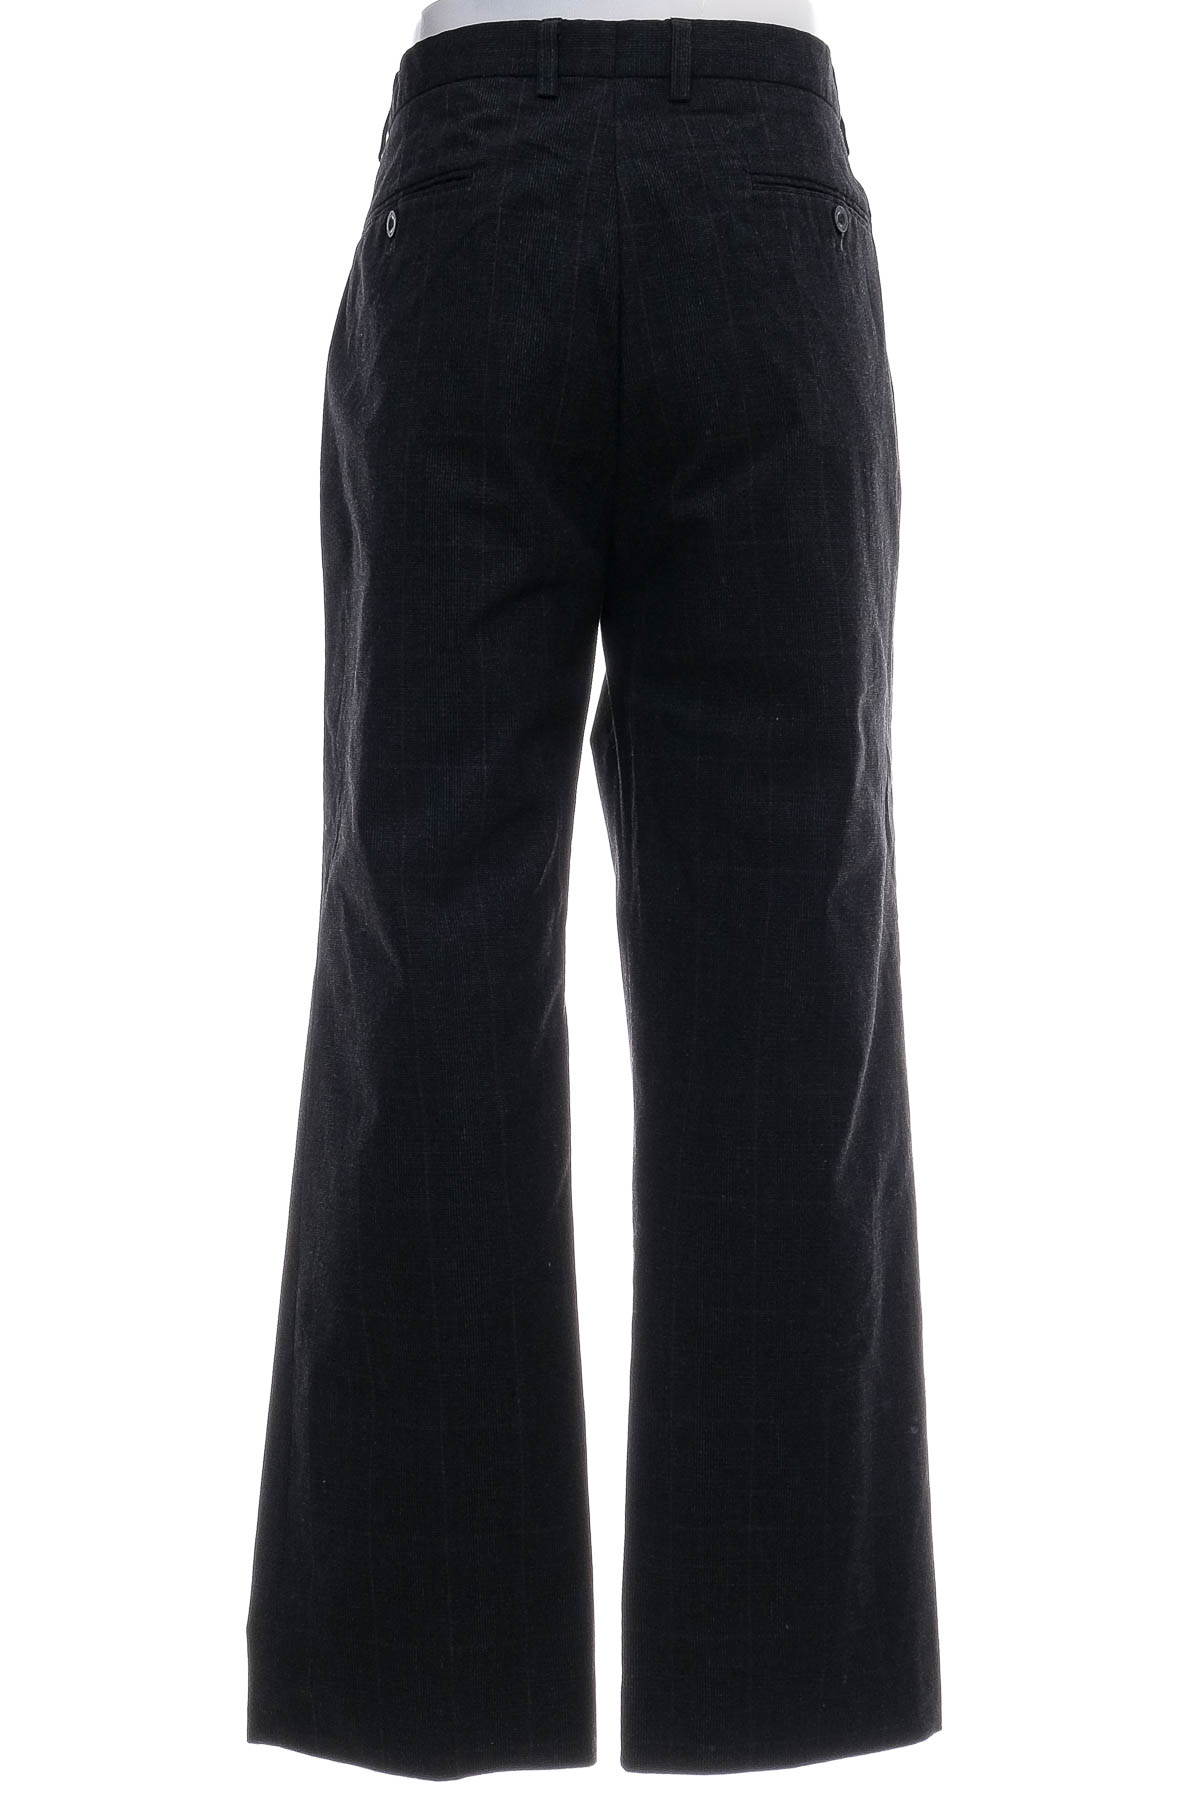 Pantalon pentru bărbați - Coolwater - 1